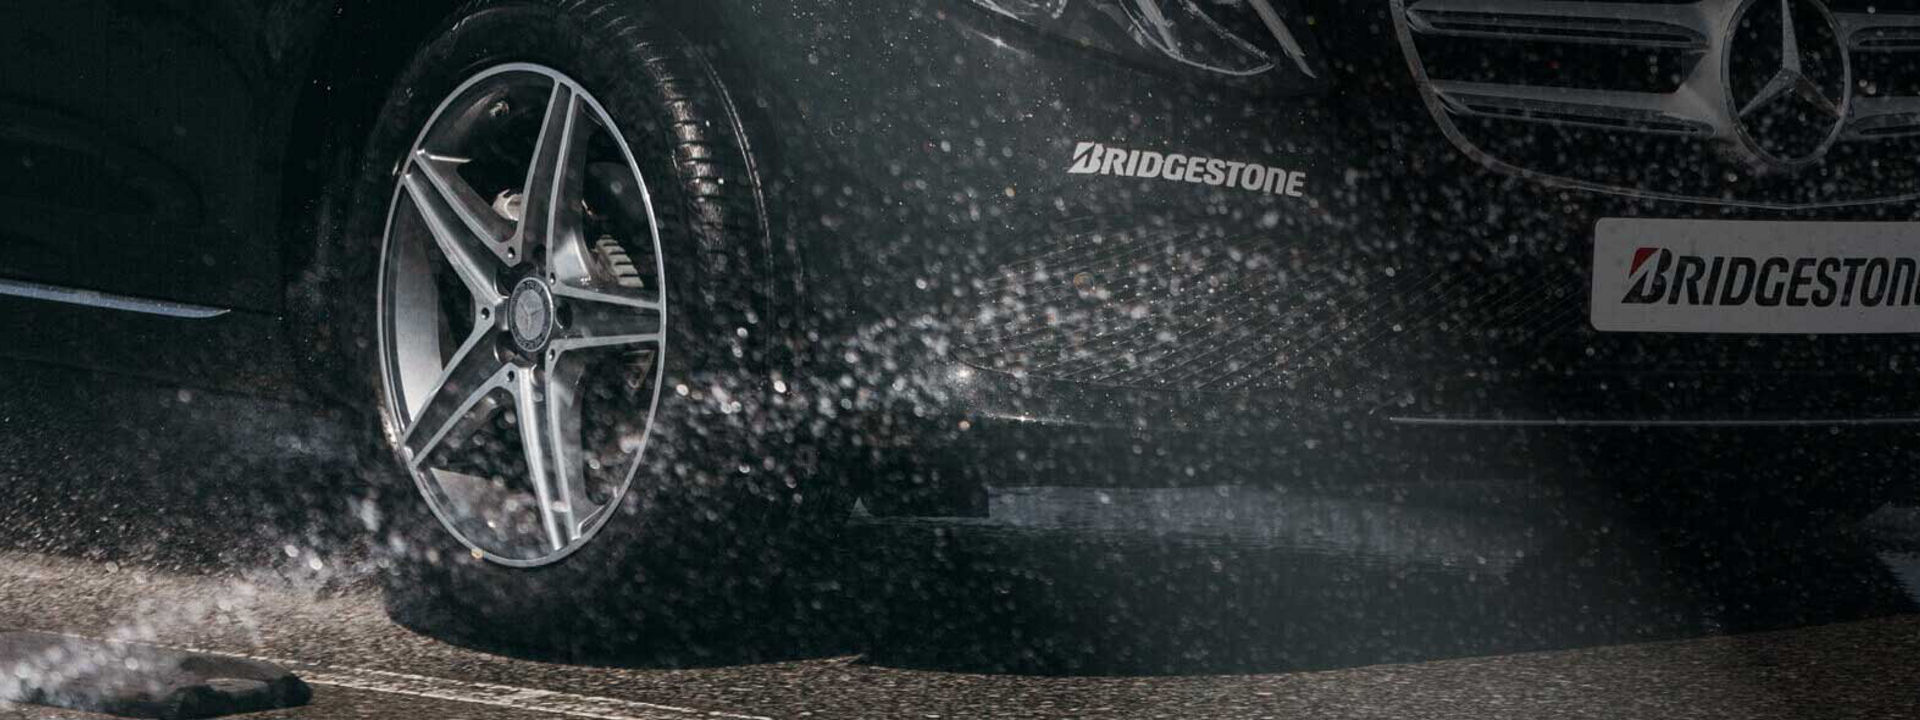 Deze afbeelding is een close-up van een Turanza-band van Bridgestone die rijdt in natte omstandigheden